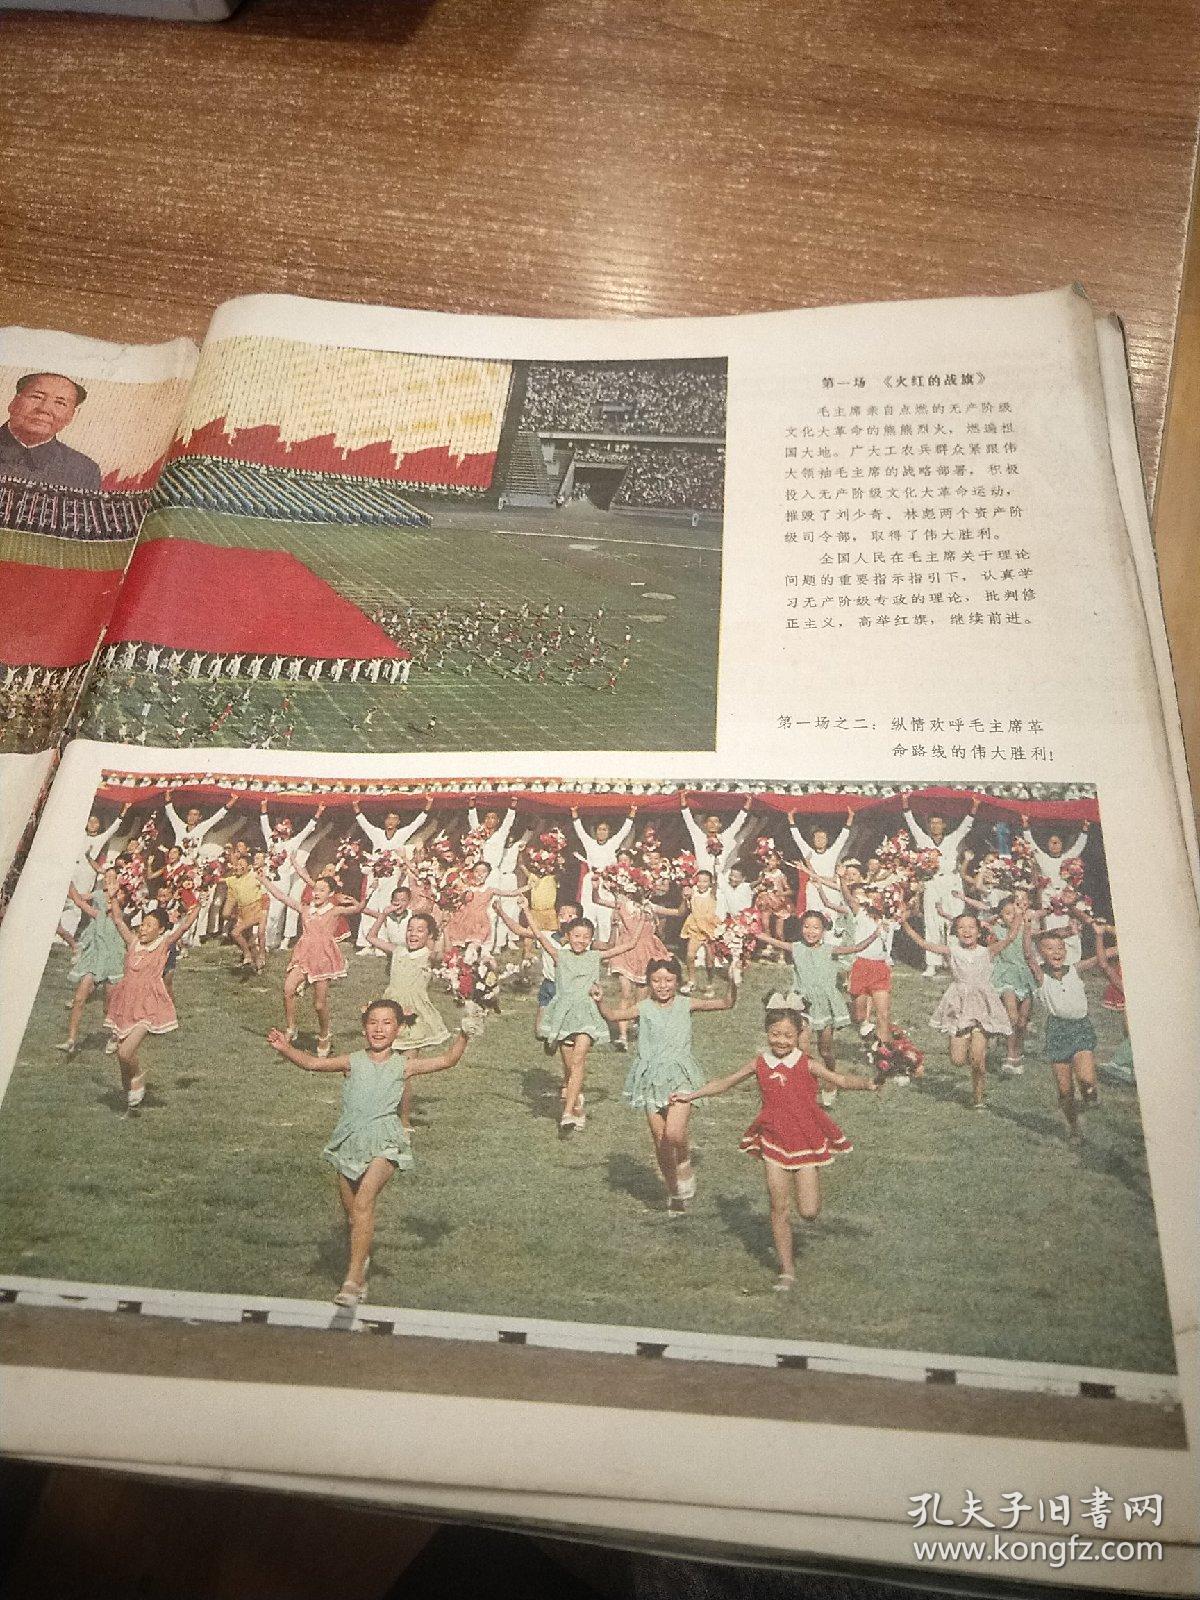 红旗颂 中华人民共和国第三届运动会团体操